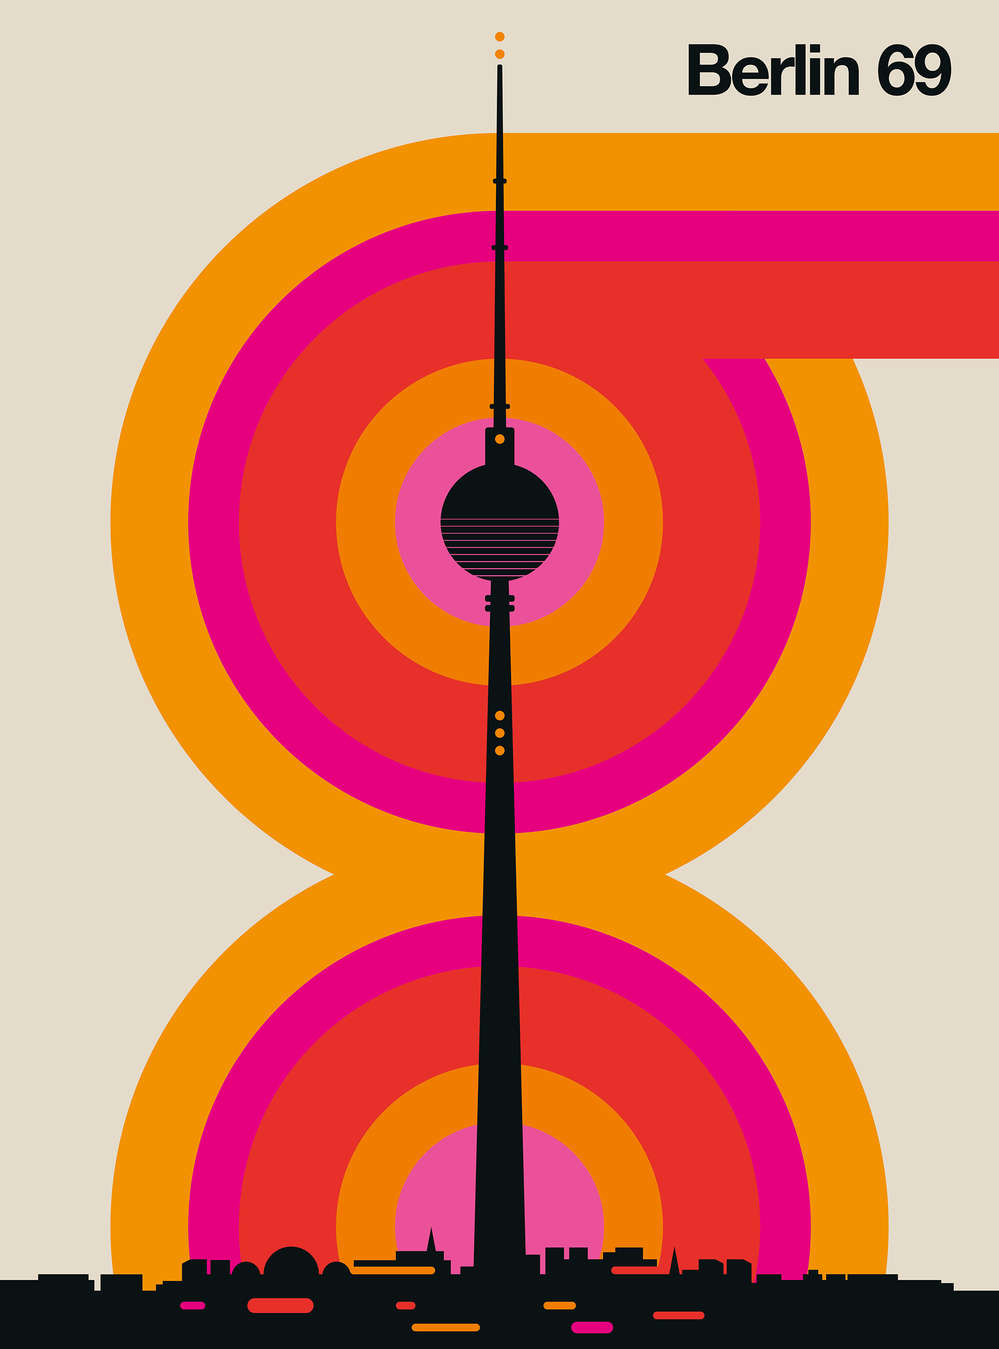             Papel pintado de la Torre de Radio de Berlín con diseño retro de los años 60
        